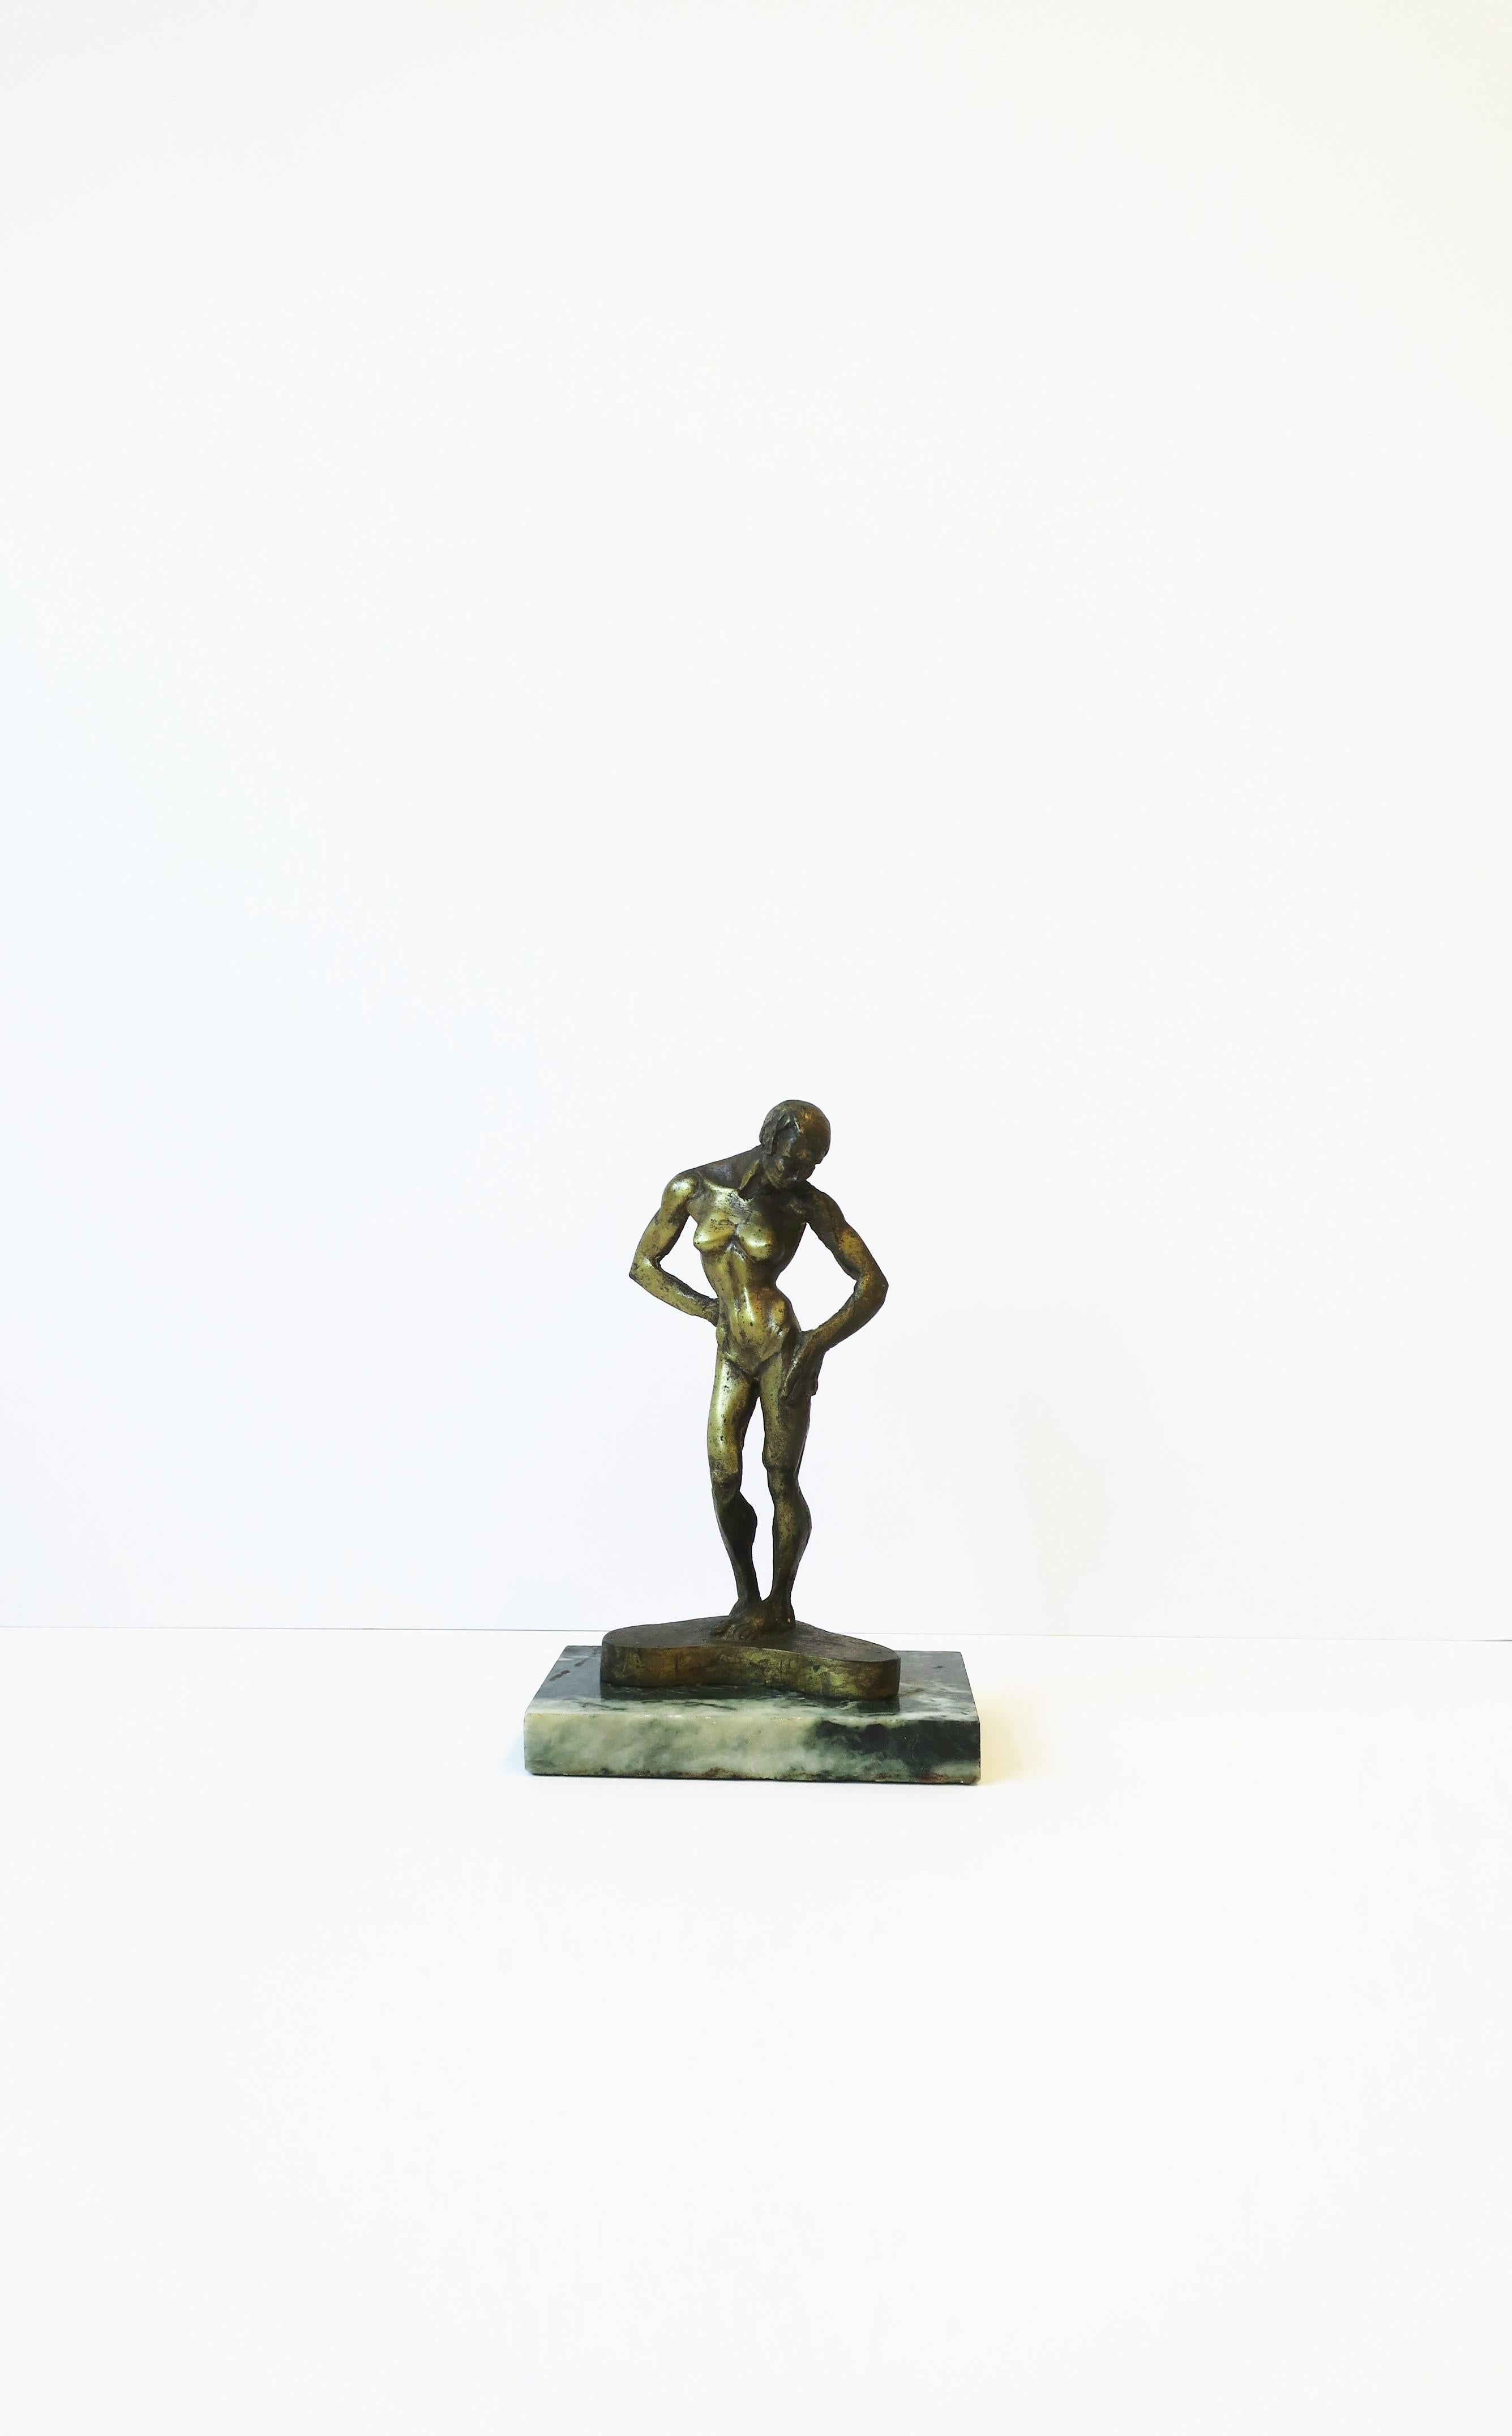 Une belle et importante sculpture figurative féminine en bronze doré, signée et numérotée, sur un socle en marbre vert foncé veiné de blanc, par le sculpteur Michael Whiting, 1977. Sculpture en bronze d'une belle tonalité, représentant une figure